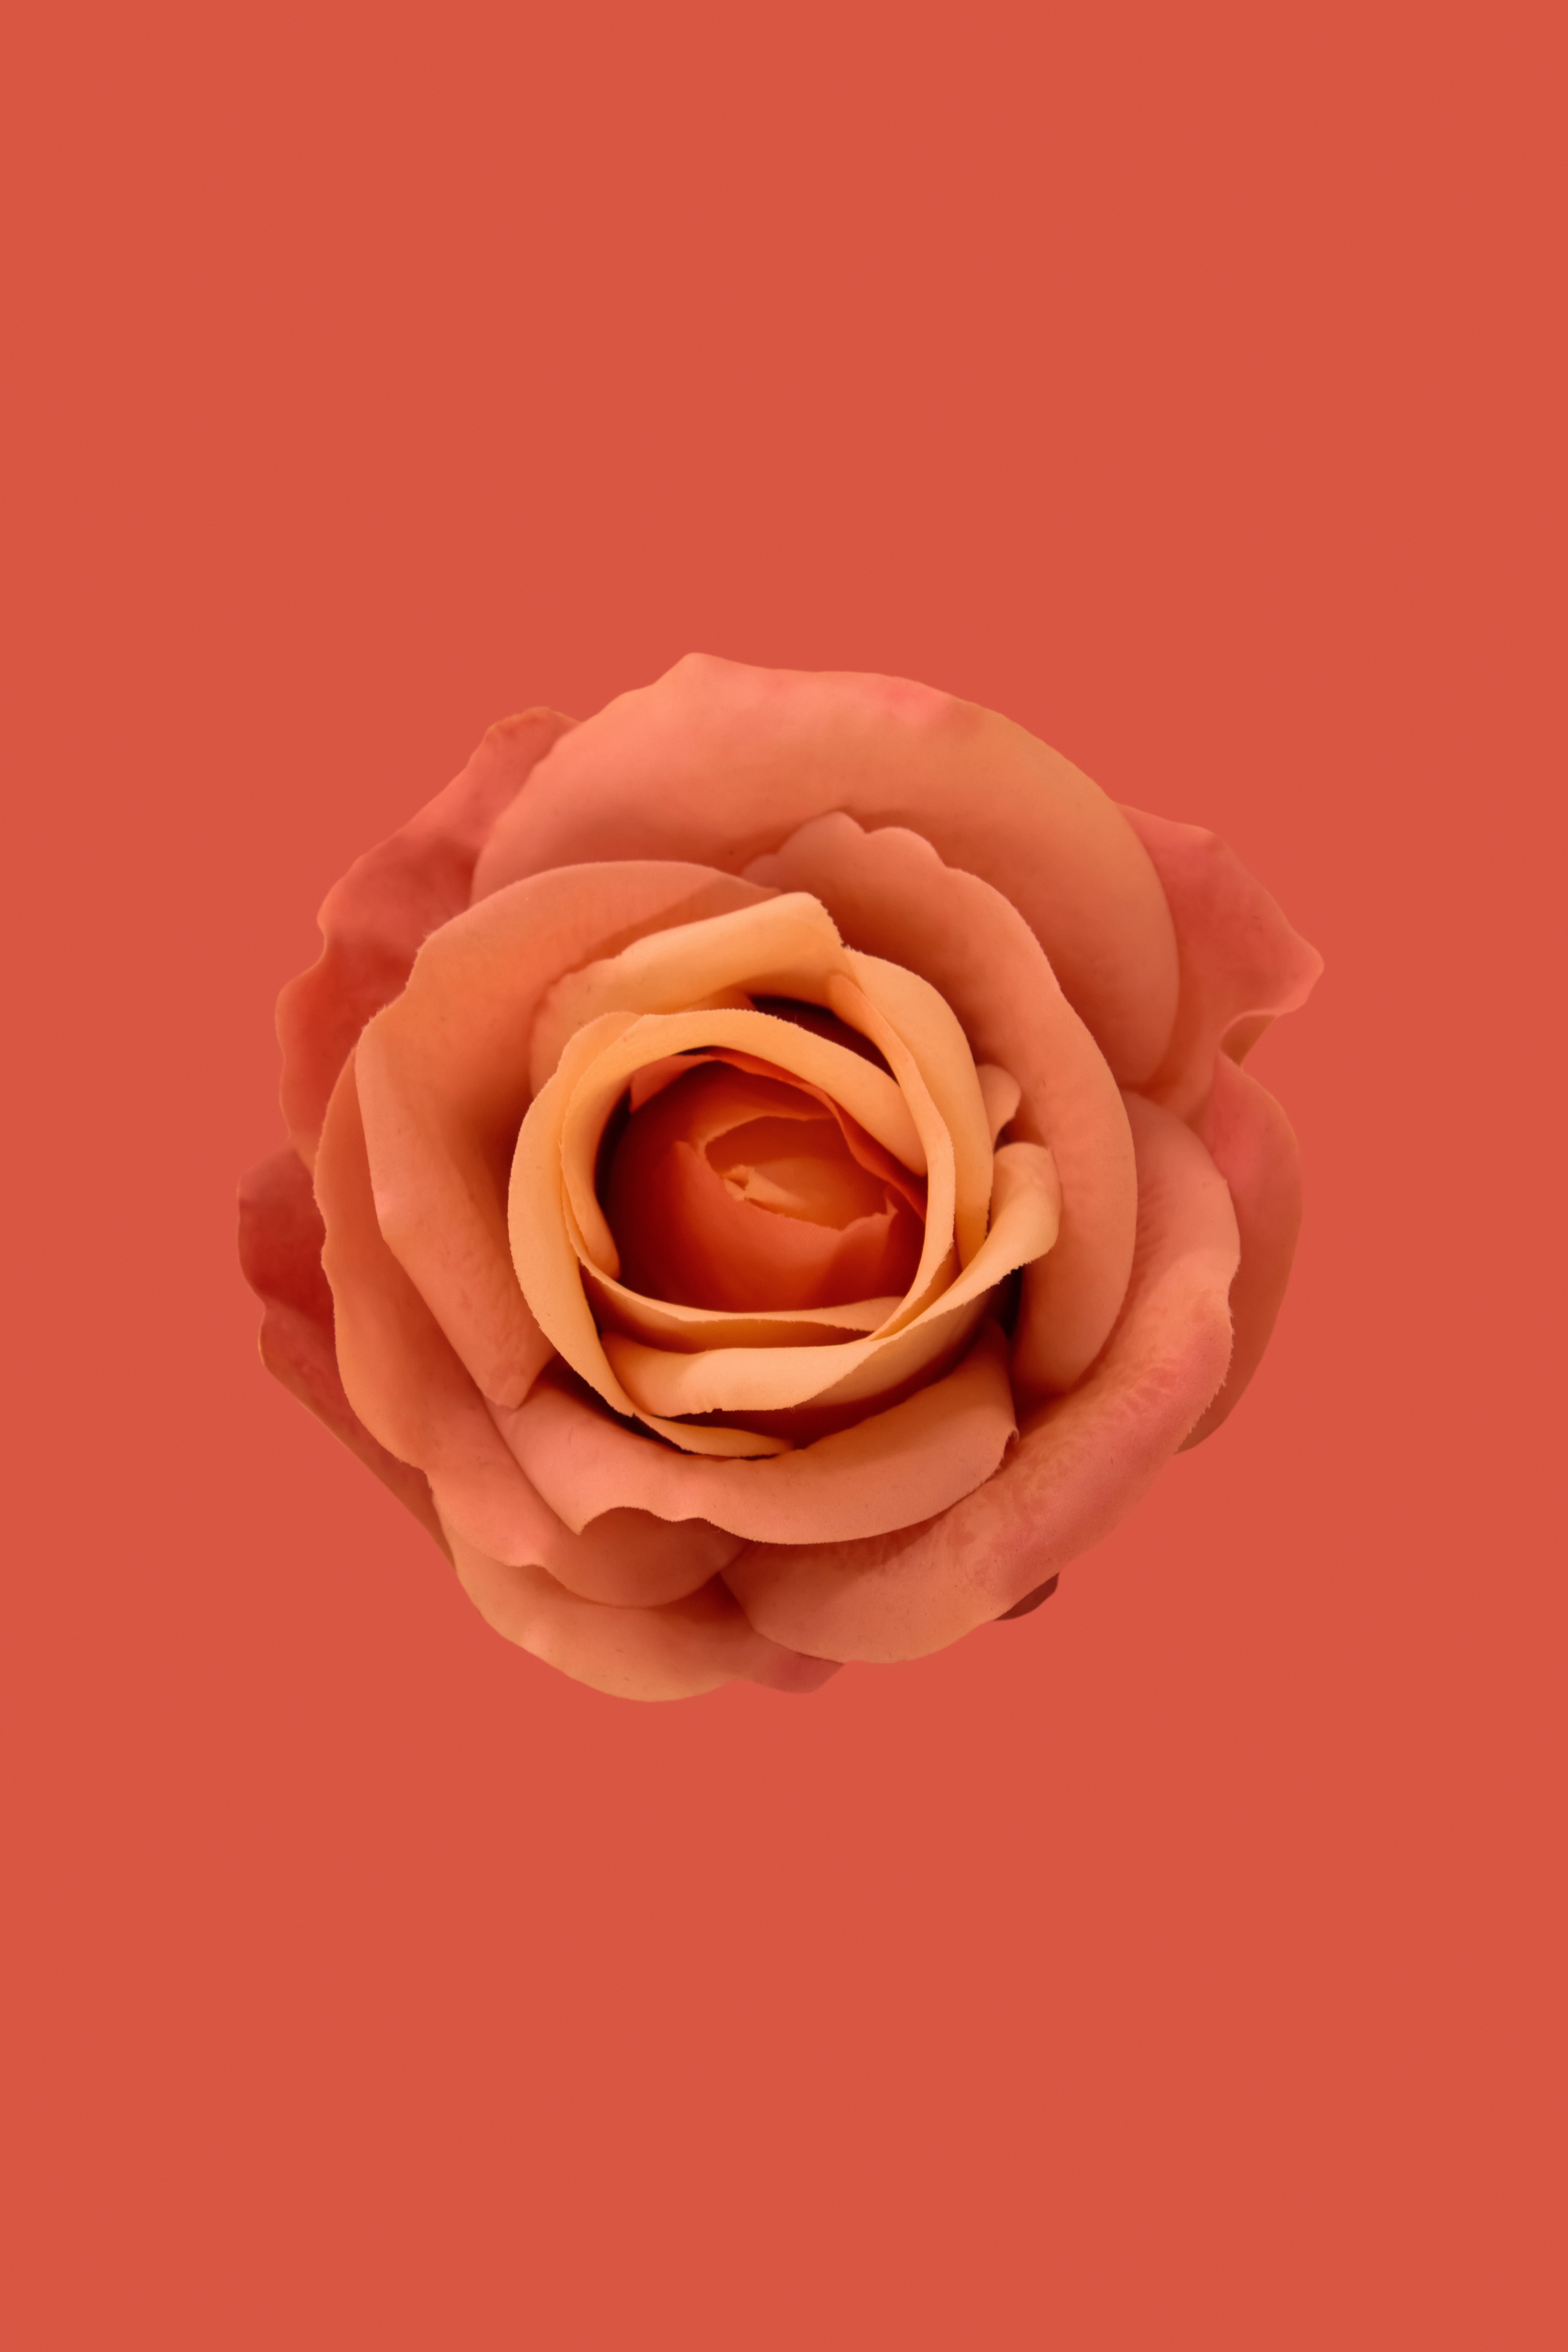 Hoa Hồng Cam (Orange Roses) Hoa hồng cam là một trong những loài hoa đẹp nhất và thường được sử dụng trong các dịp đặc biệt. Những bông hoa cam này toát lên vẻ đẹp lãng mạn và quyến rũ, sẽ làm bạn say đắm từ cái nhìn đầu tiên. Hãy xem hình ảnh về hoa hồng cam này để cảm nhận sự tinh tế và sang trọng của chúng.